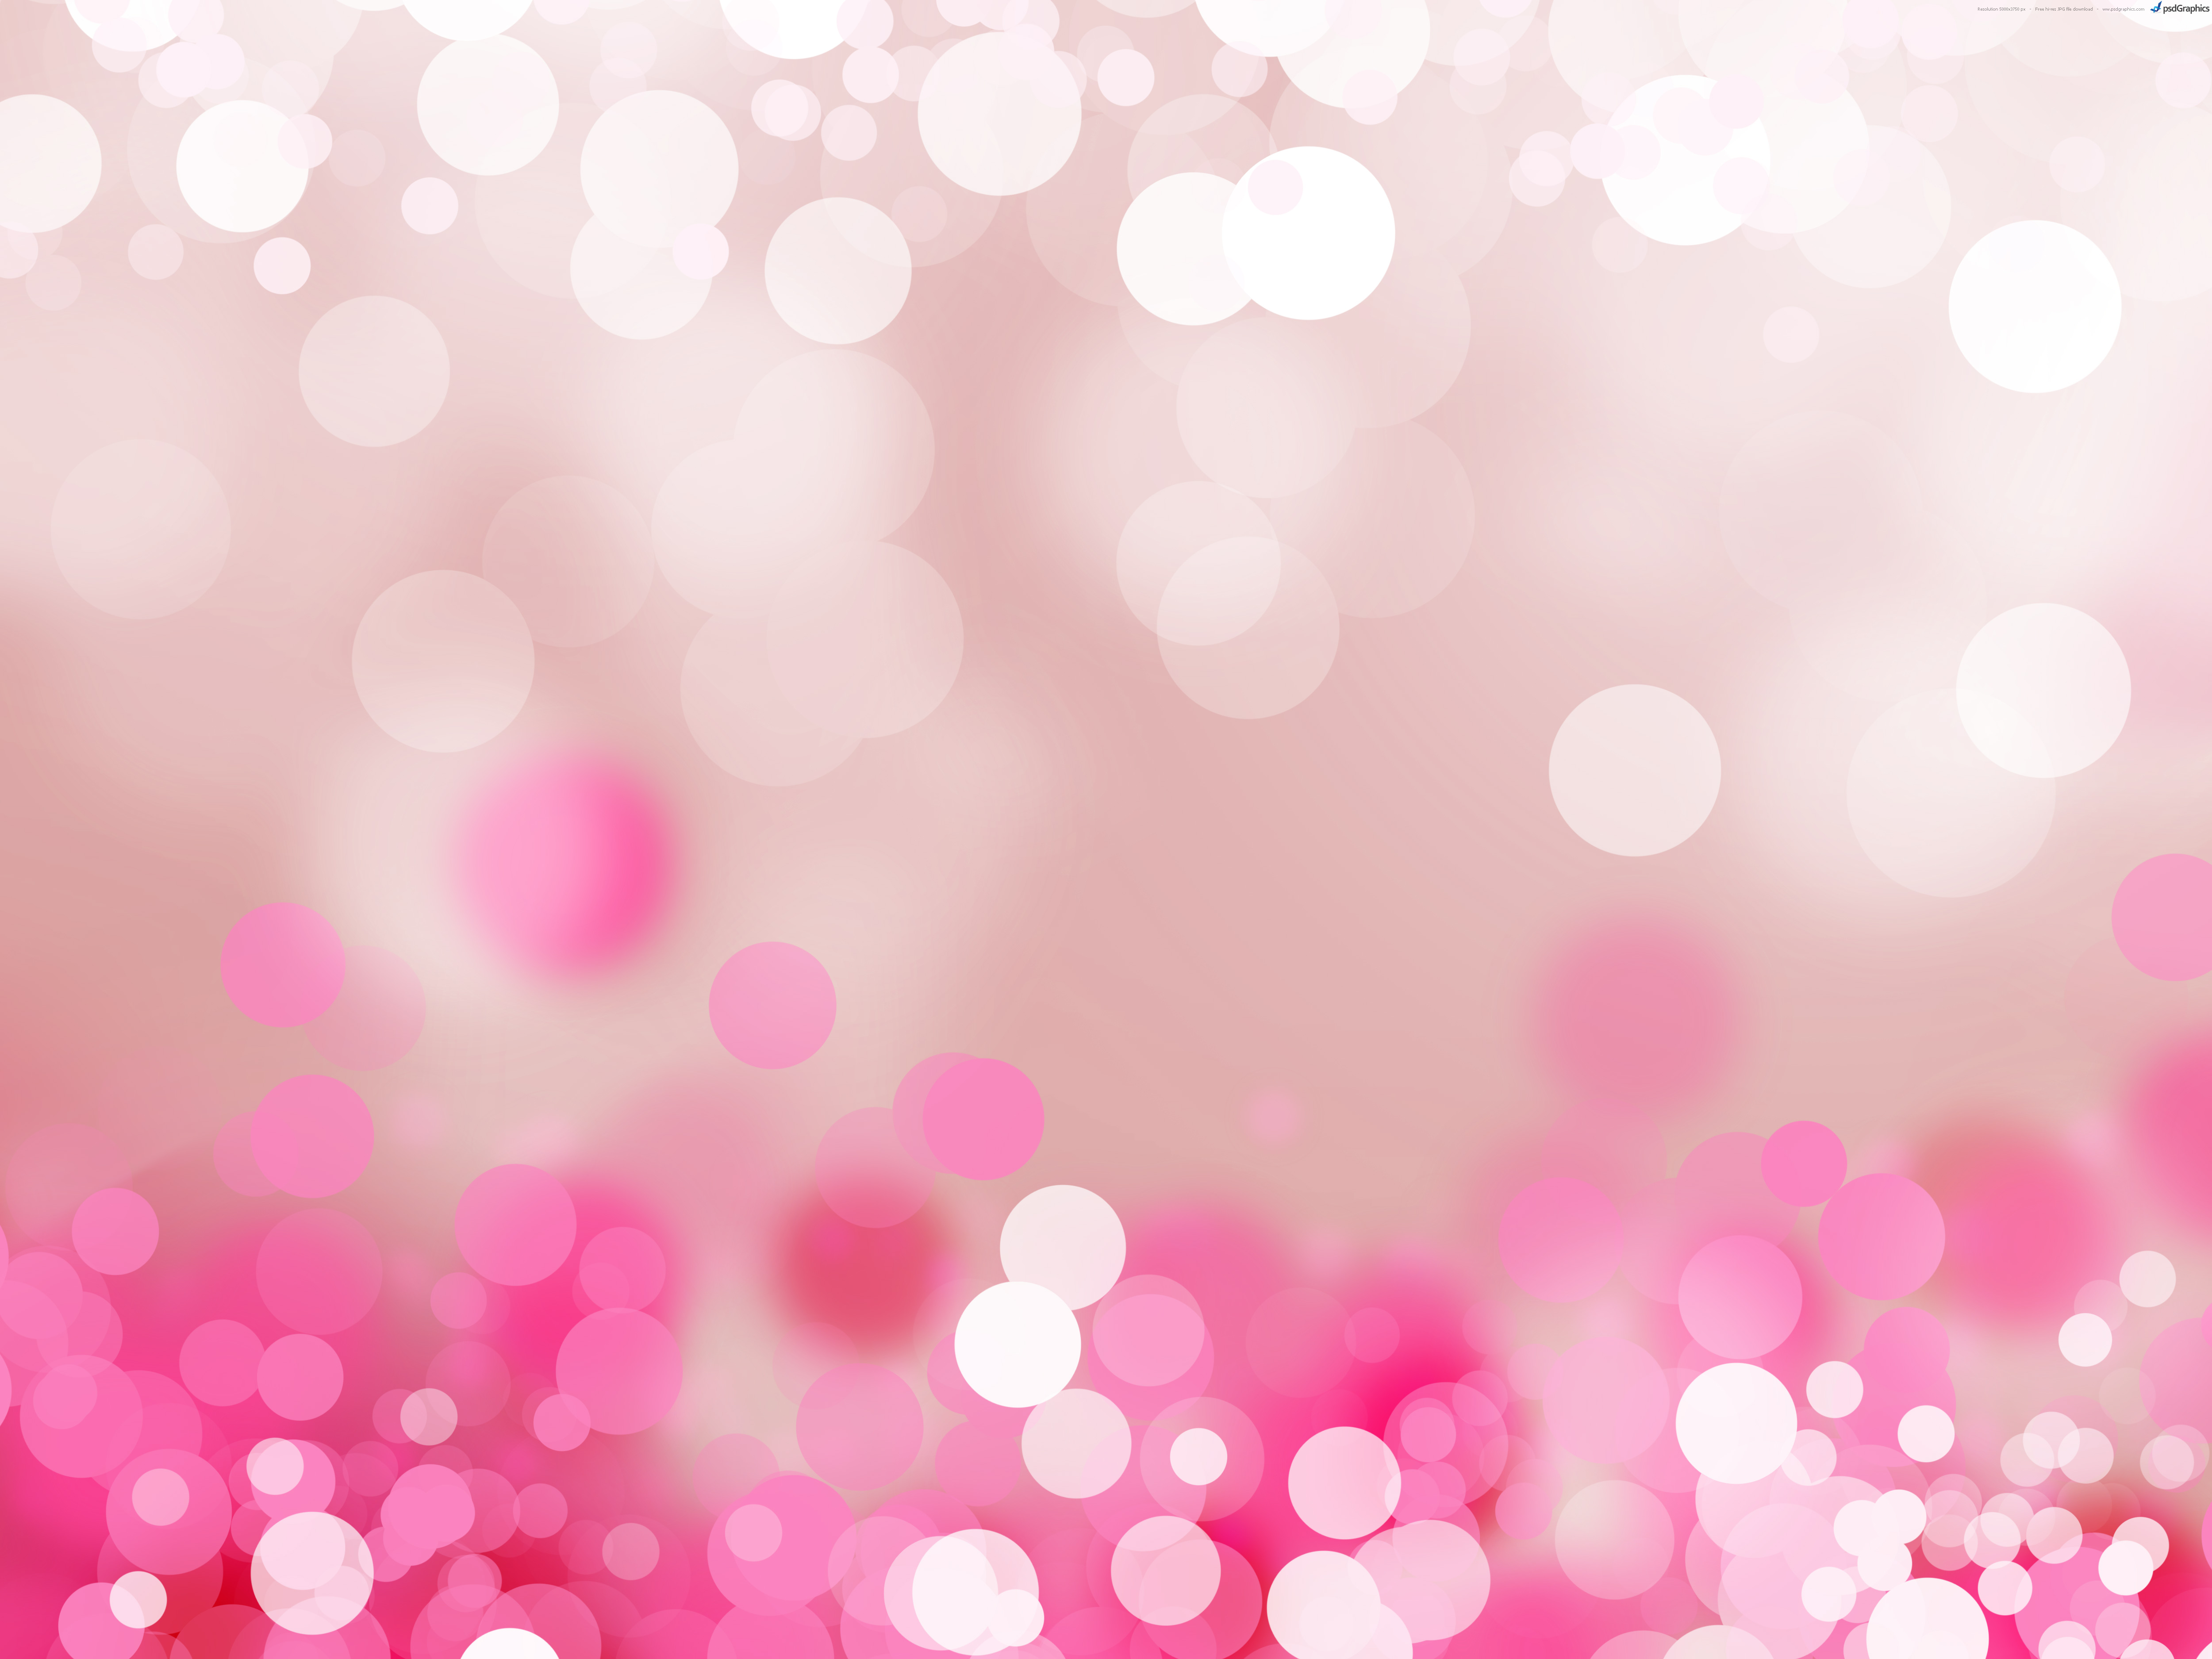 Pastel Pink Tumblr Wallpapers